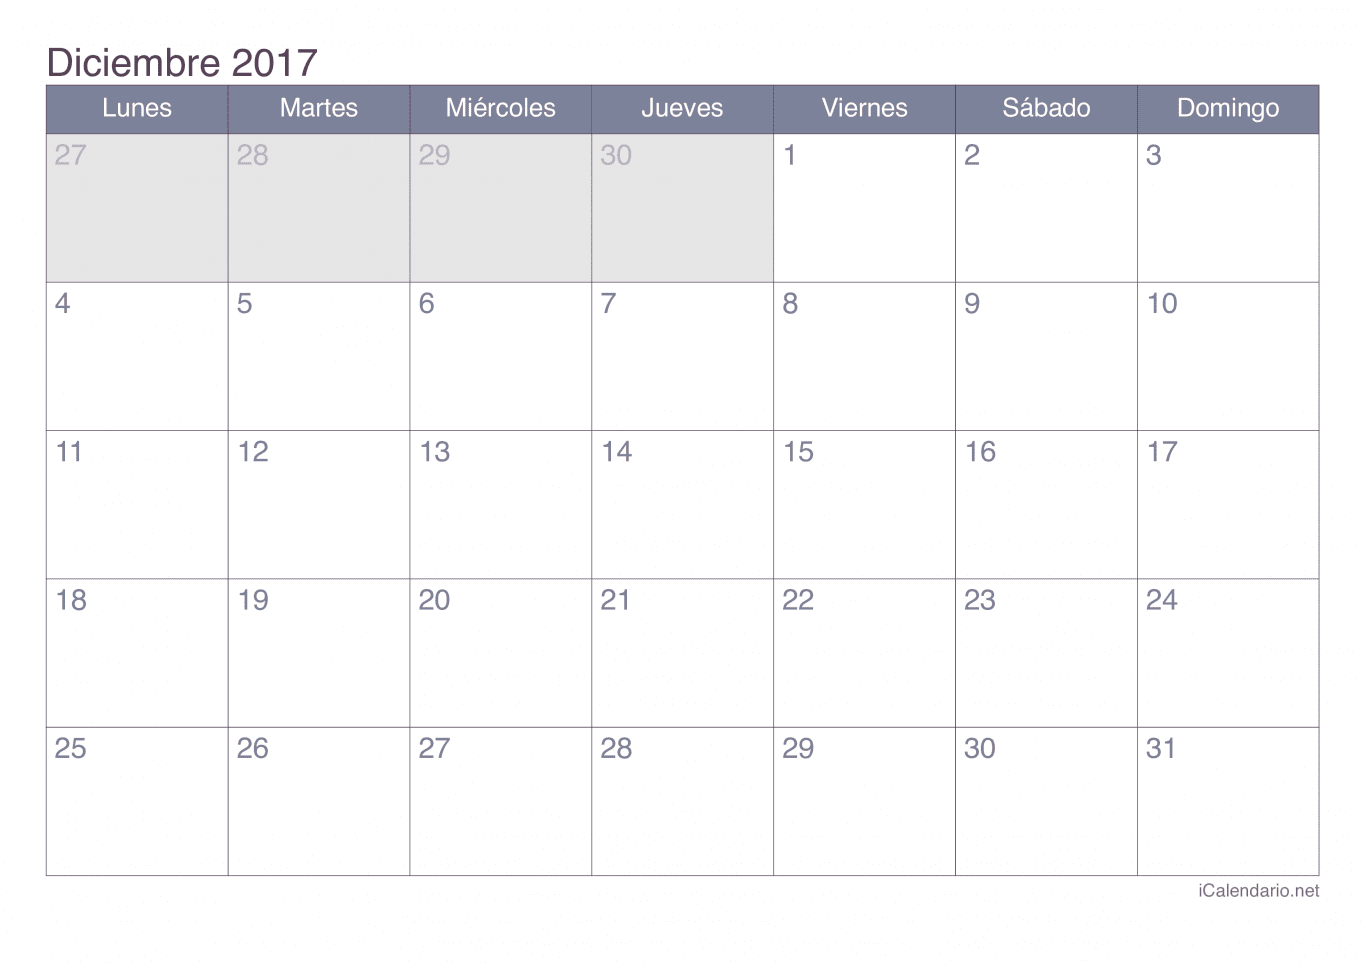 Calendario de diciembre 2017 - Office